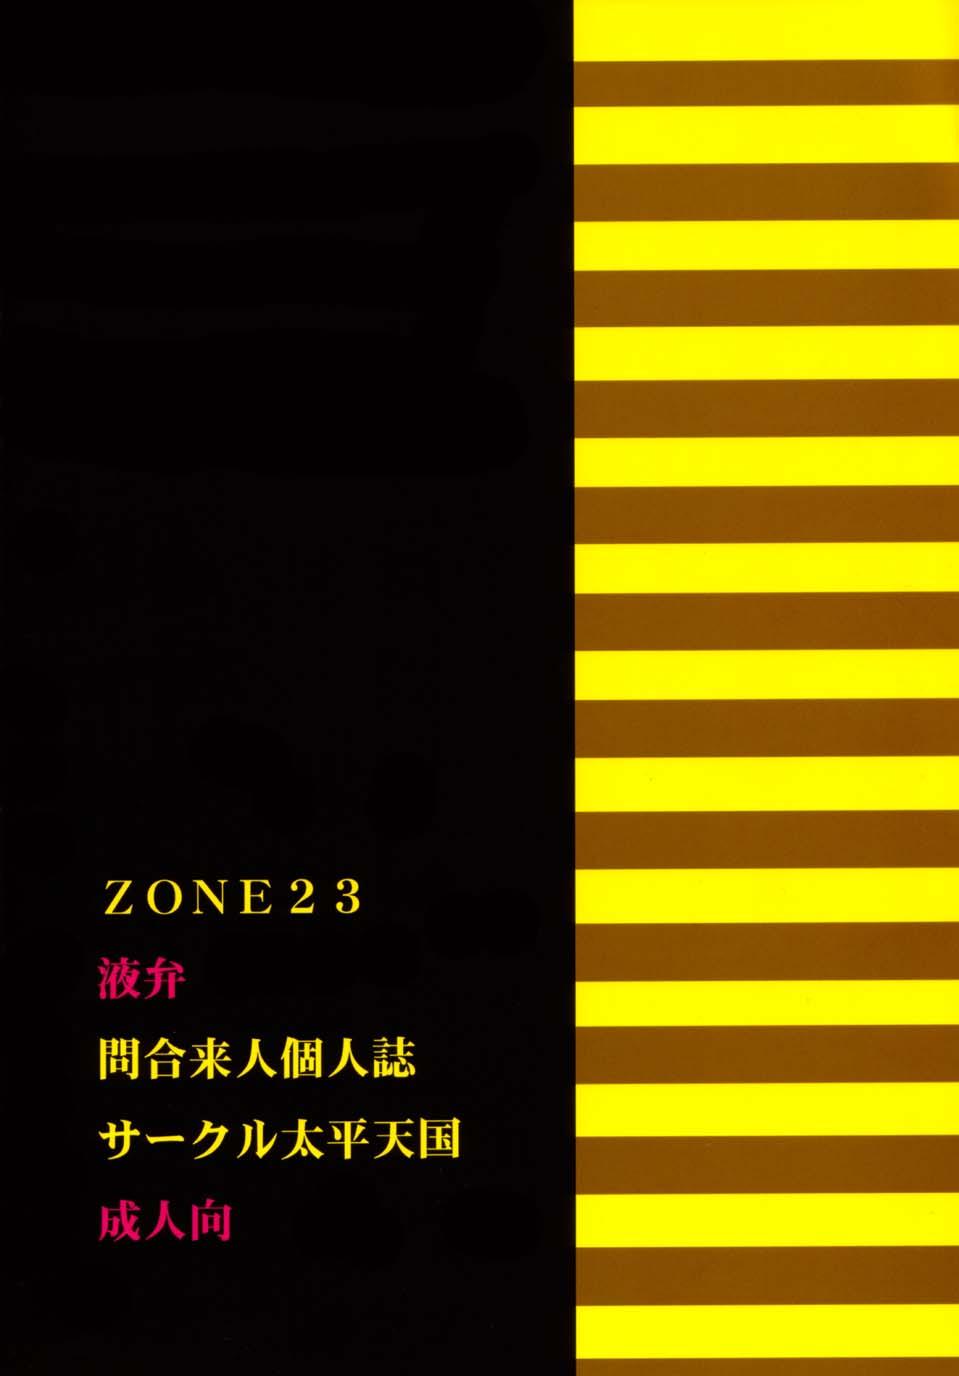 ZONE23 ekiben 23